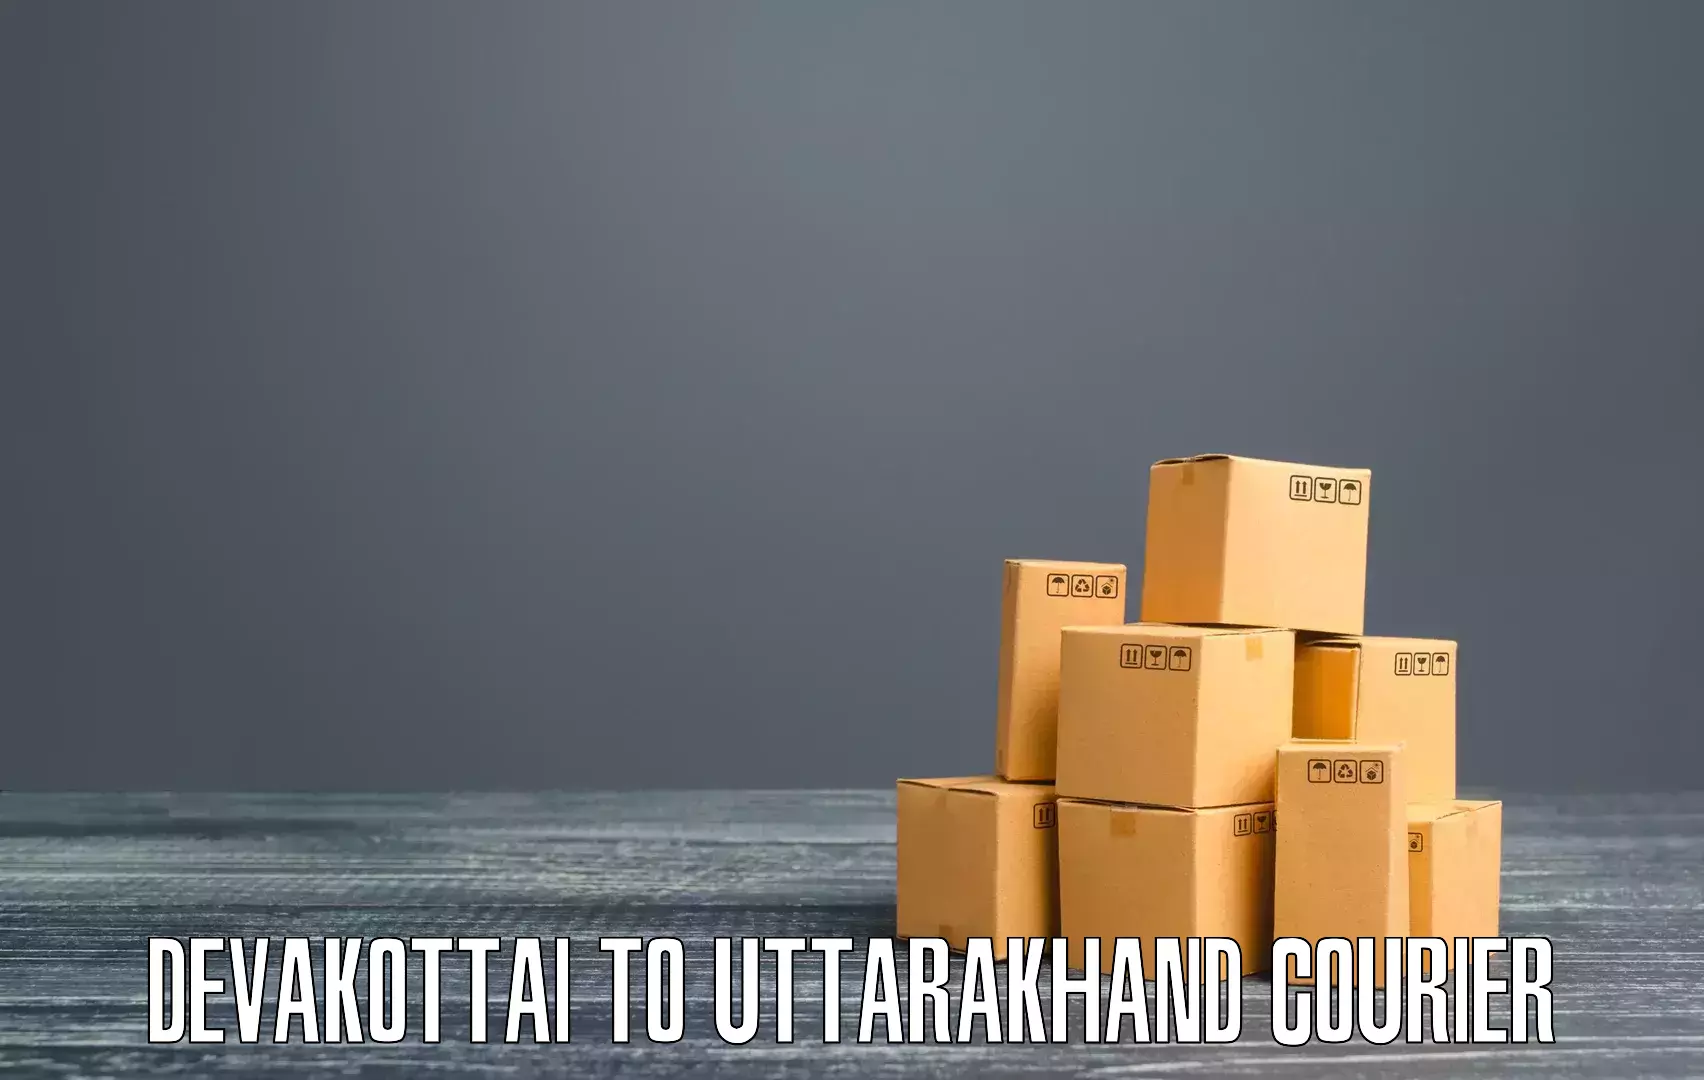 User-friendly courier app Devakottai to Roorkee